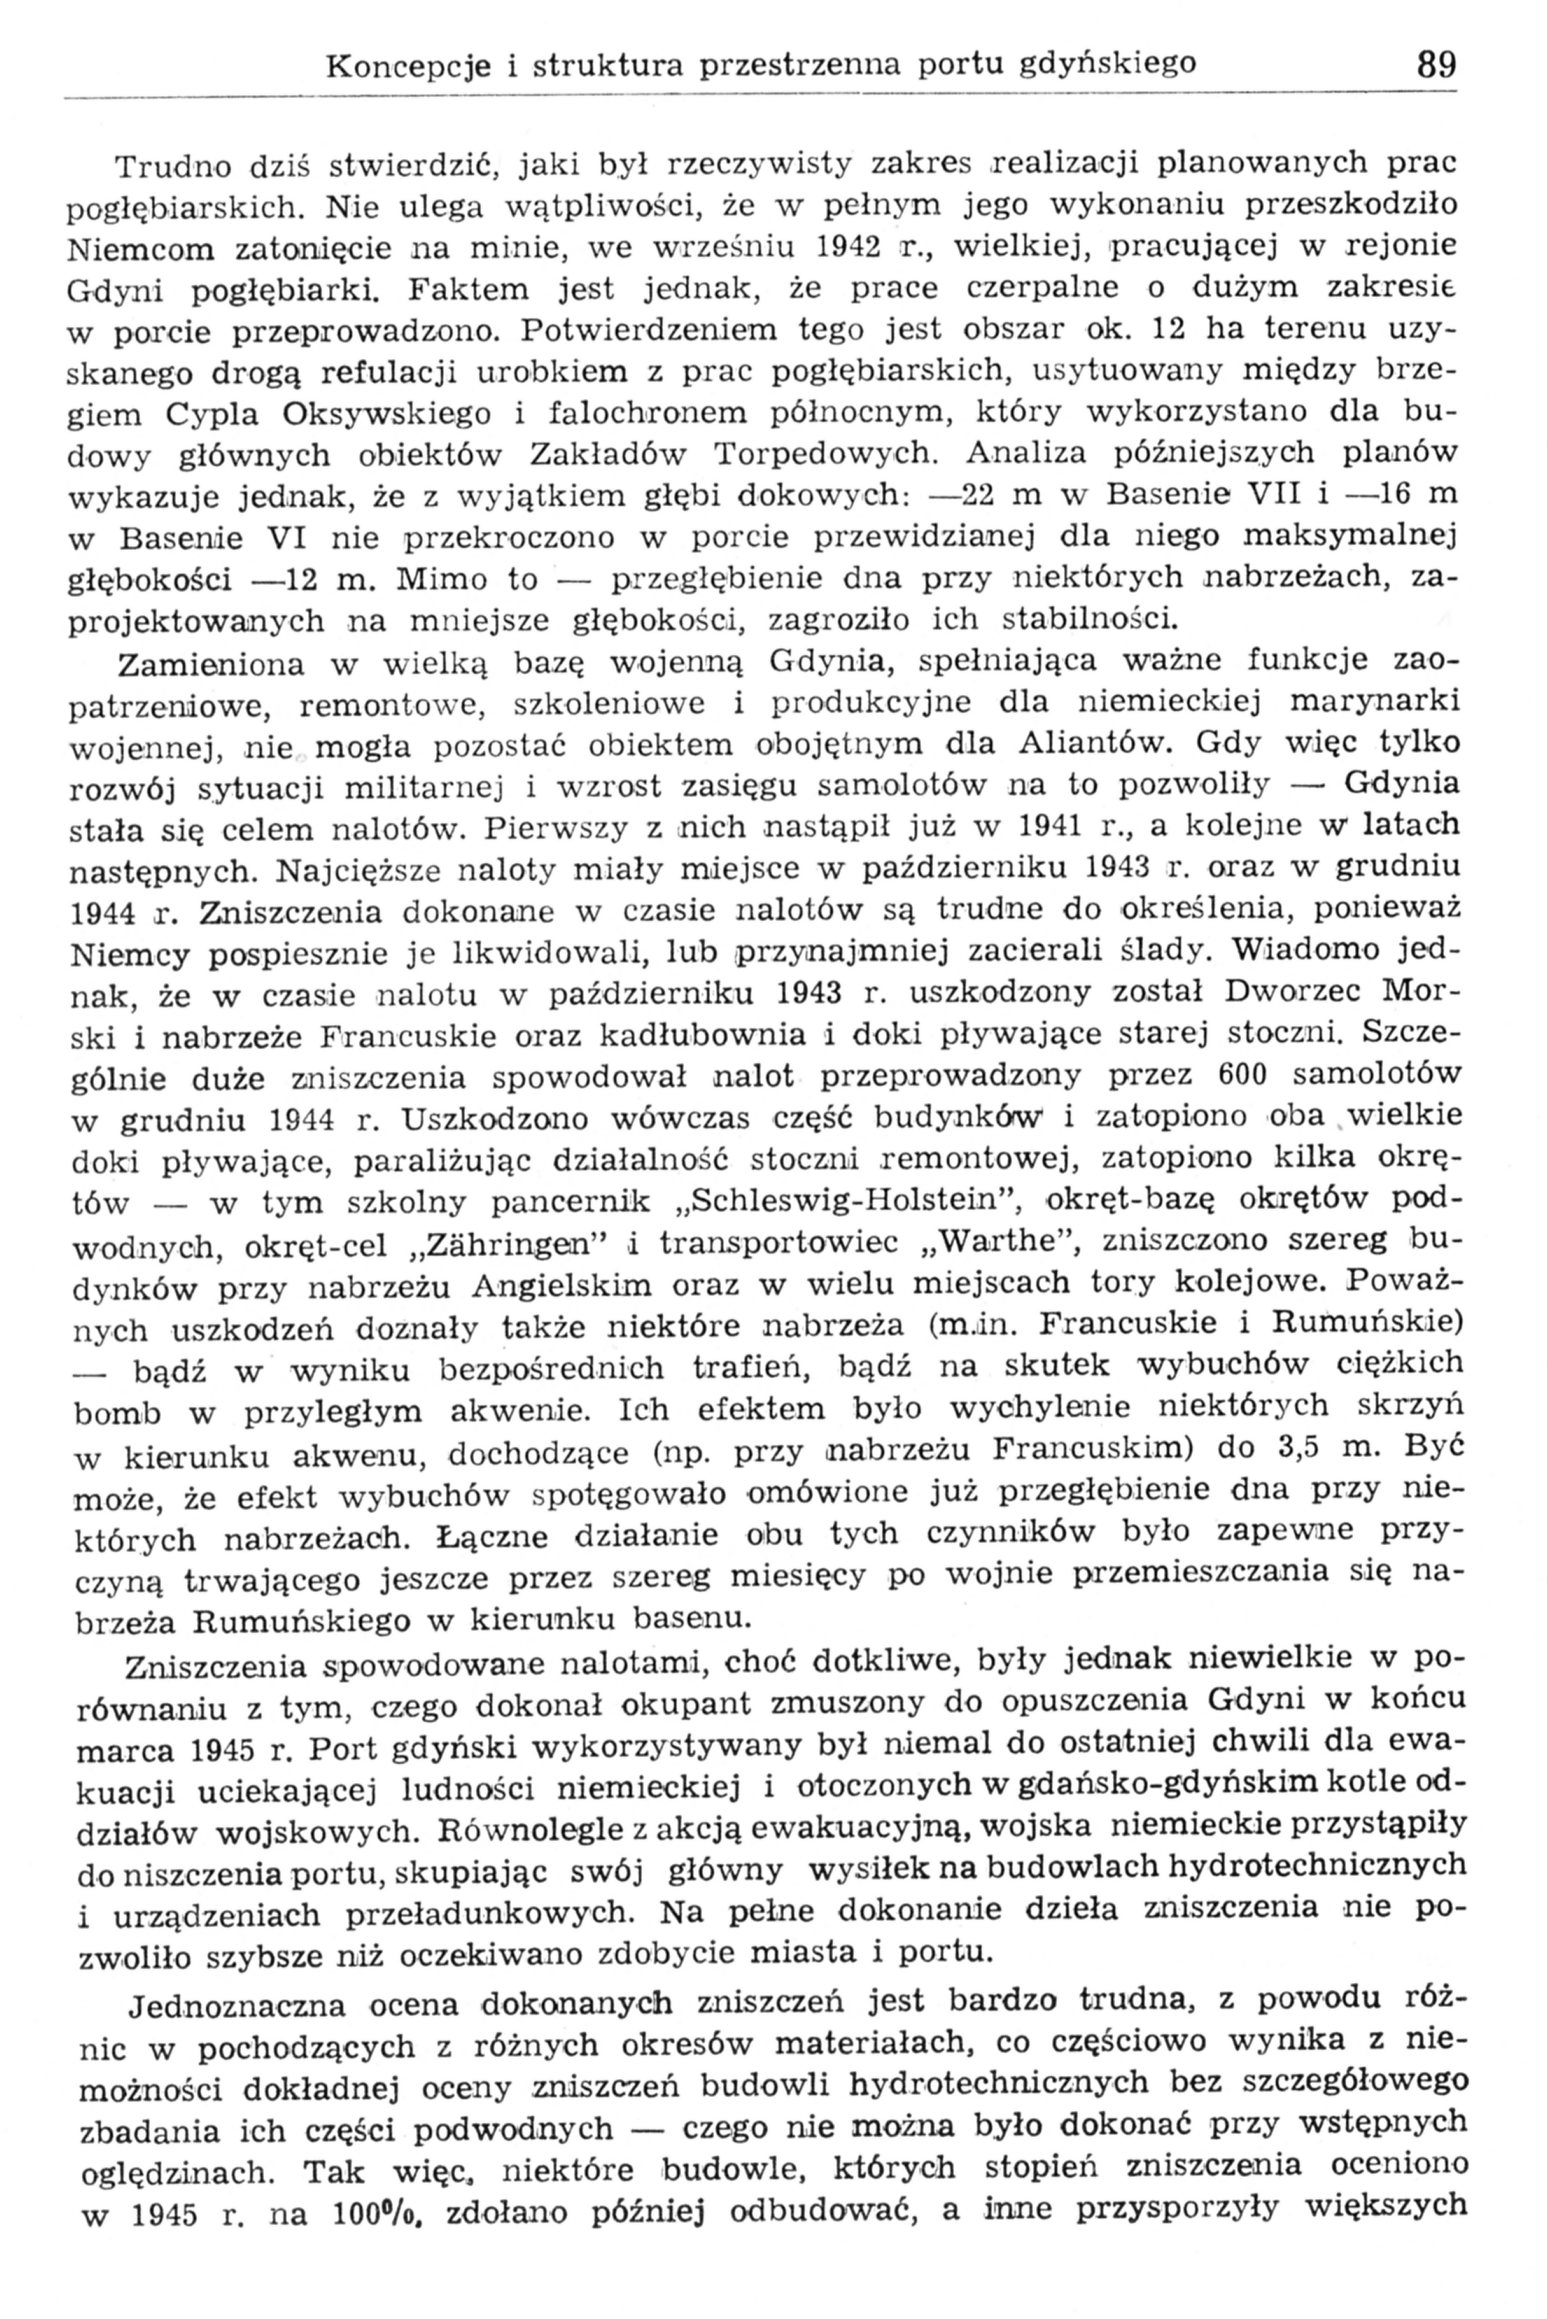 Koncepcje i struktura przestrzenna portu gdyńskiego - zarys przemian (część 2: 1939-1965)